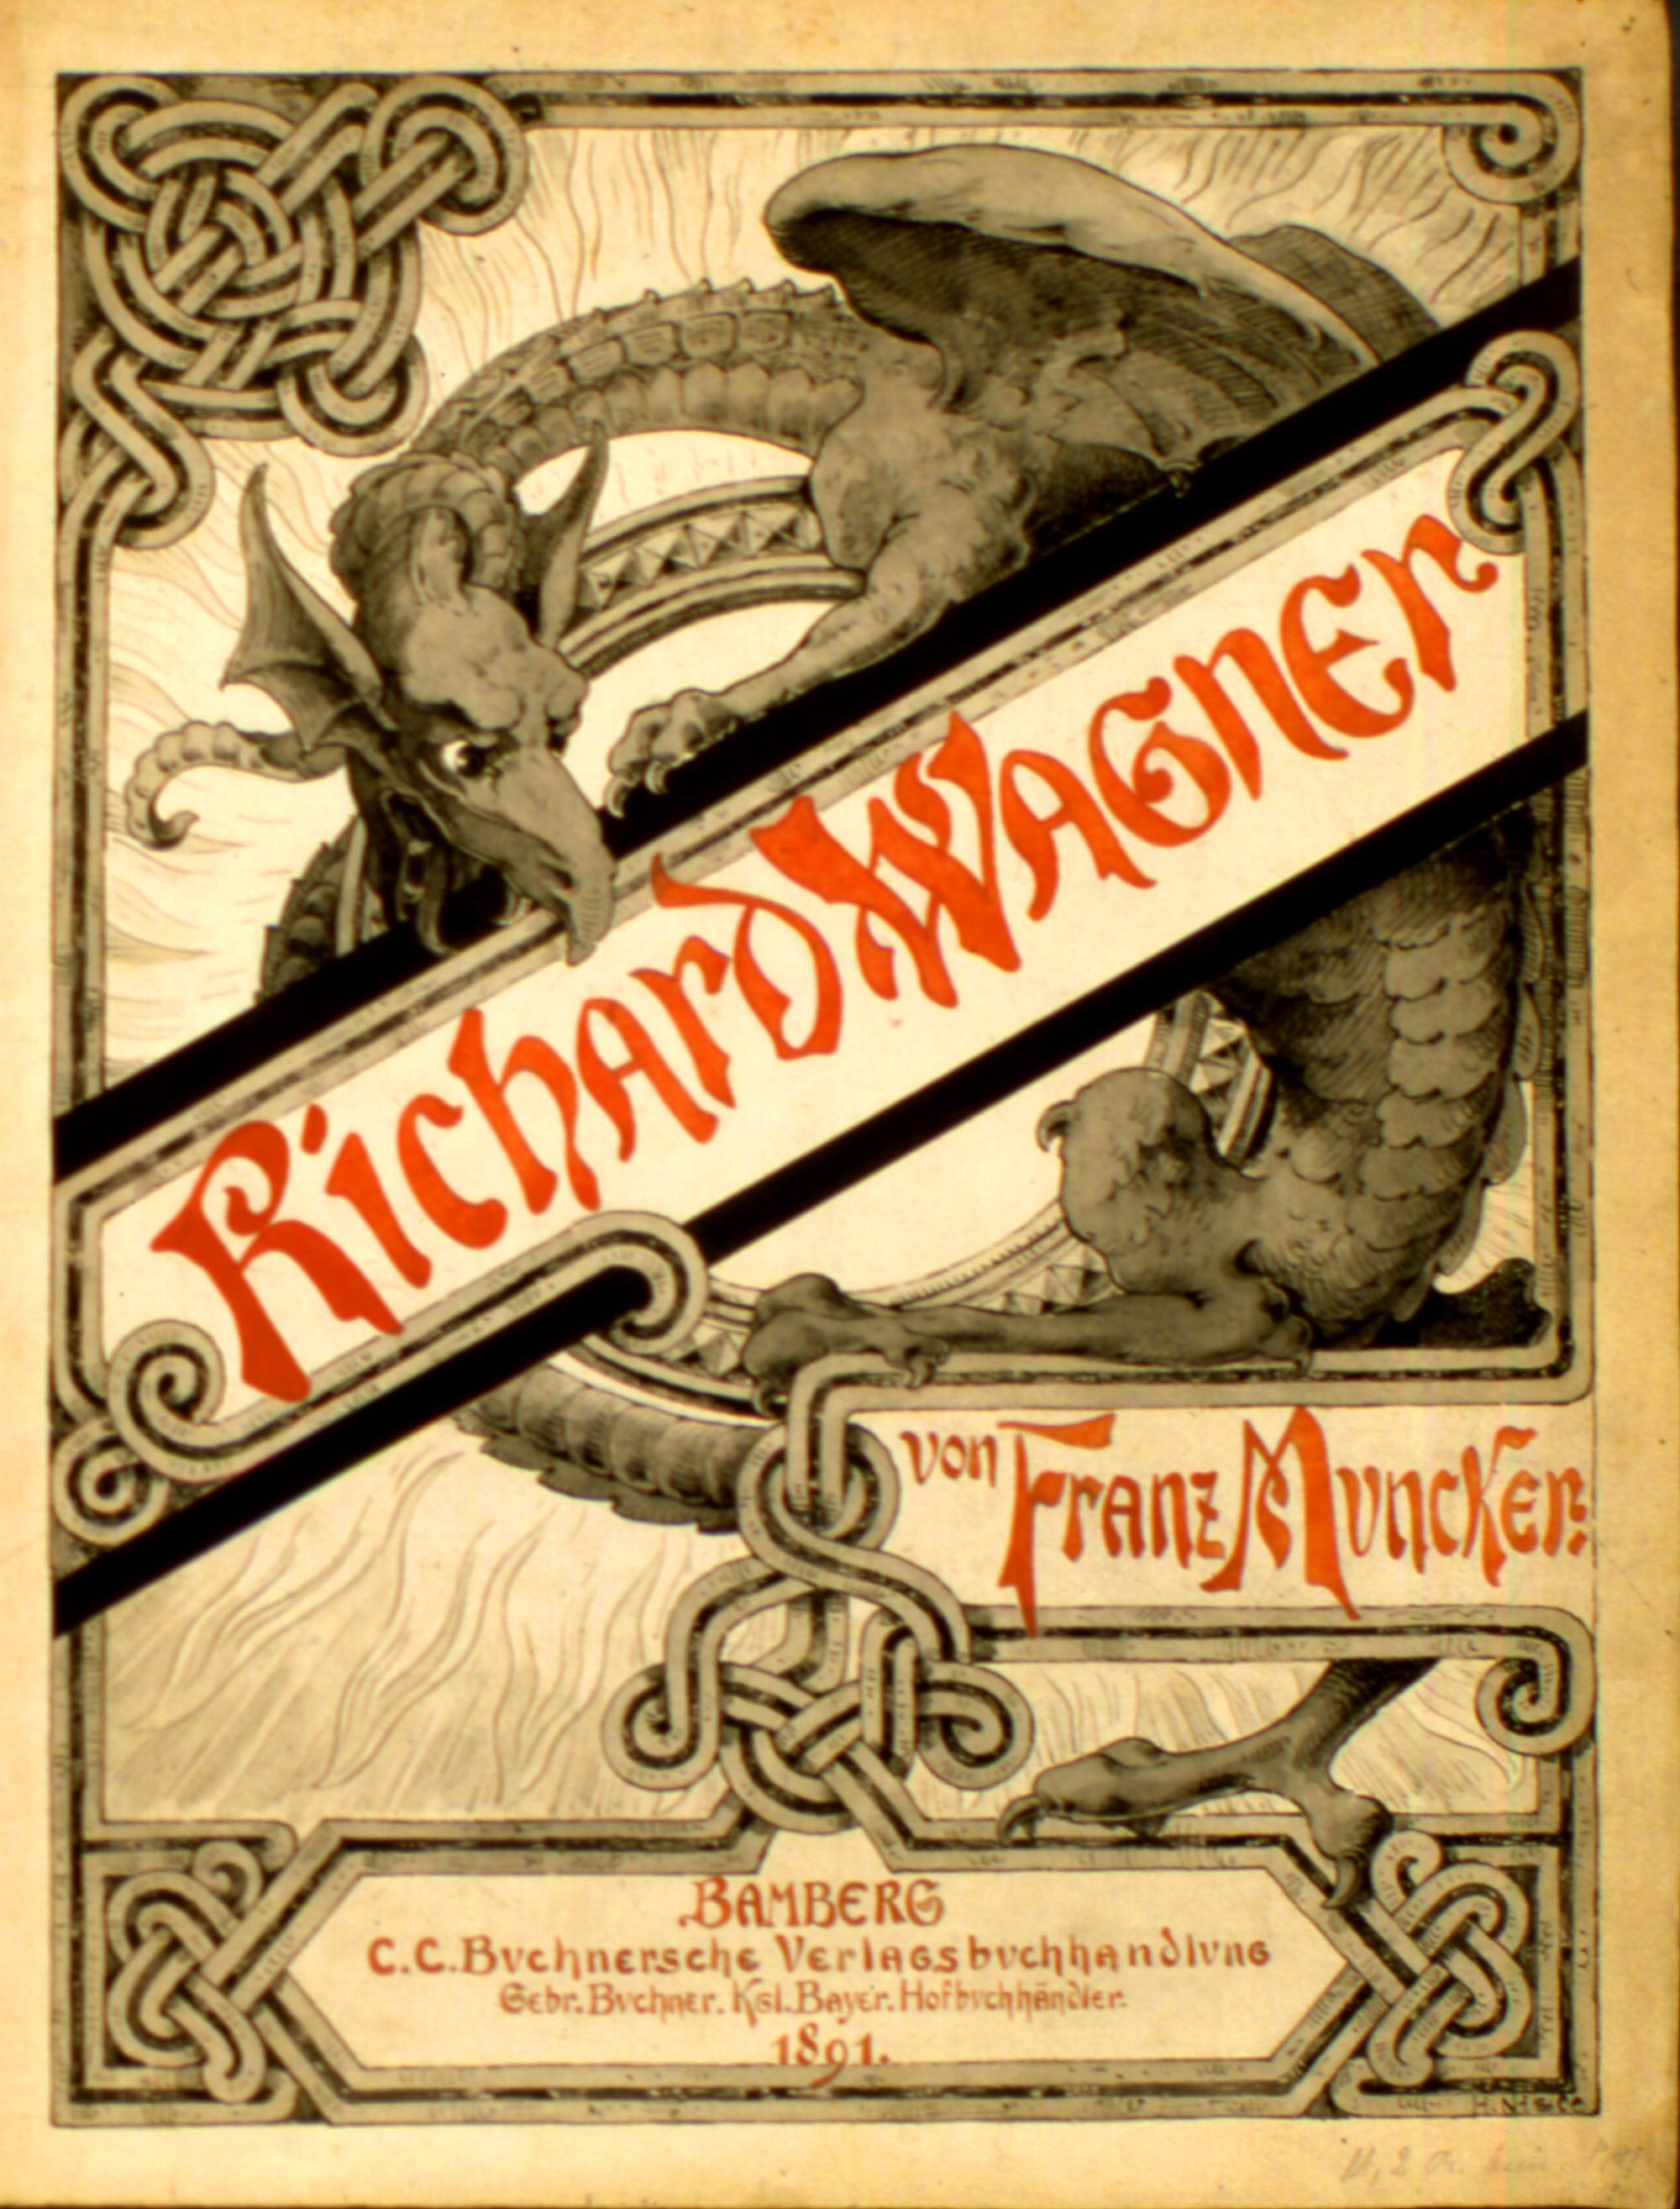 Handgezeichneter Entwurf zum Titelblatt für die Wagner-Biografie von Franz Muncker aus dem Bamberger C. C. Buchners Verlag, 1891. Der Erfolg dieses Buches war so groß, dass 1909 eine Neuauflage erschien und sogar eine preiswerte Ausgabe in Pappe herausgebracht wurde.